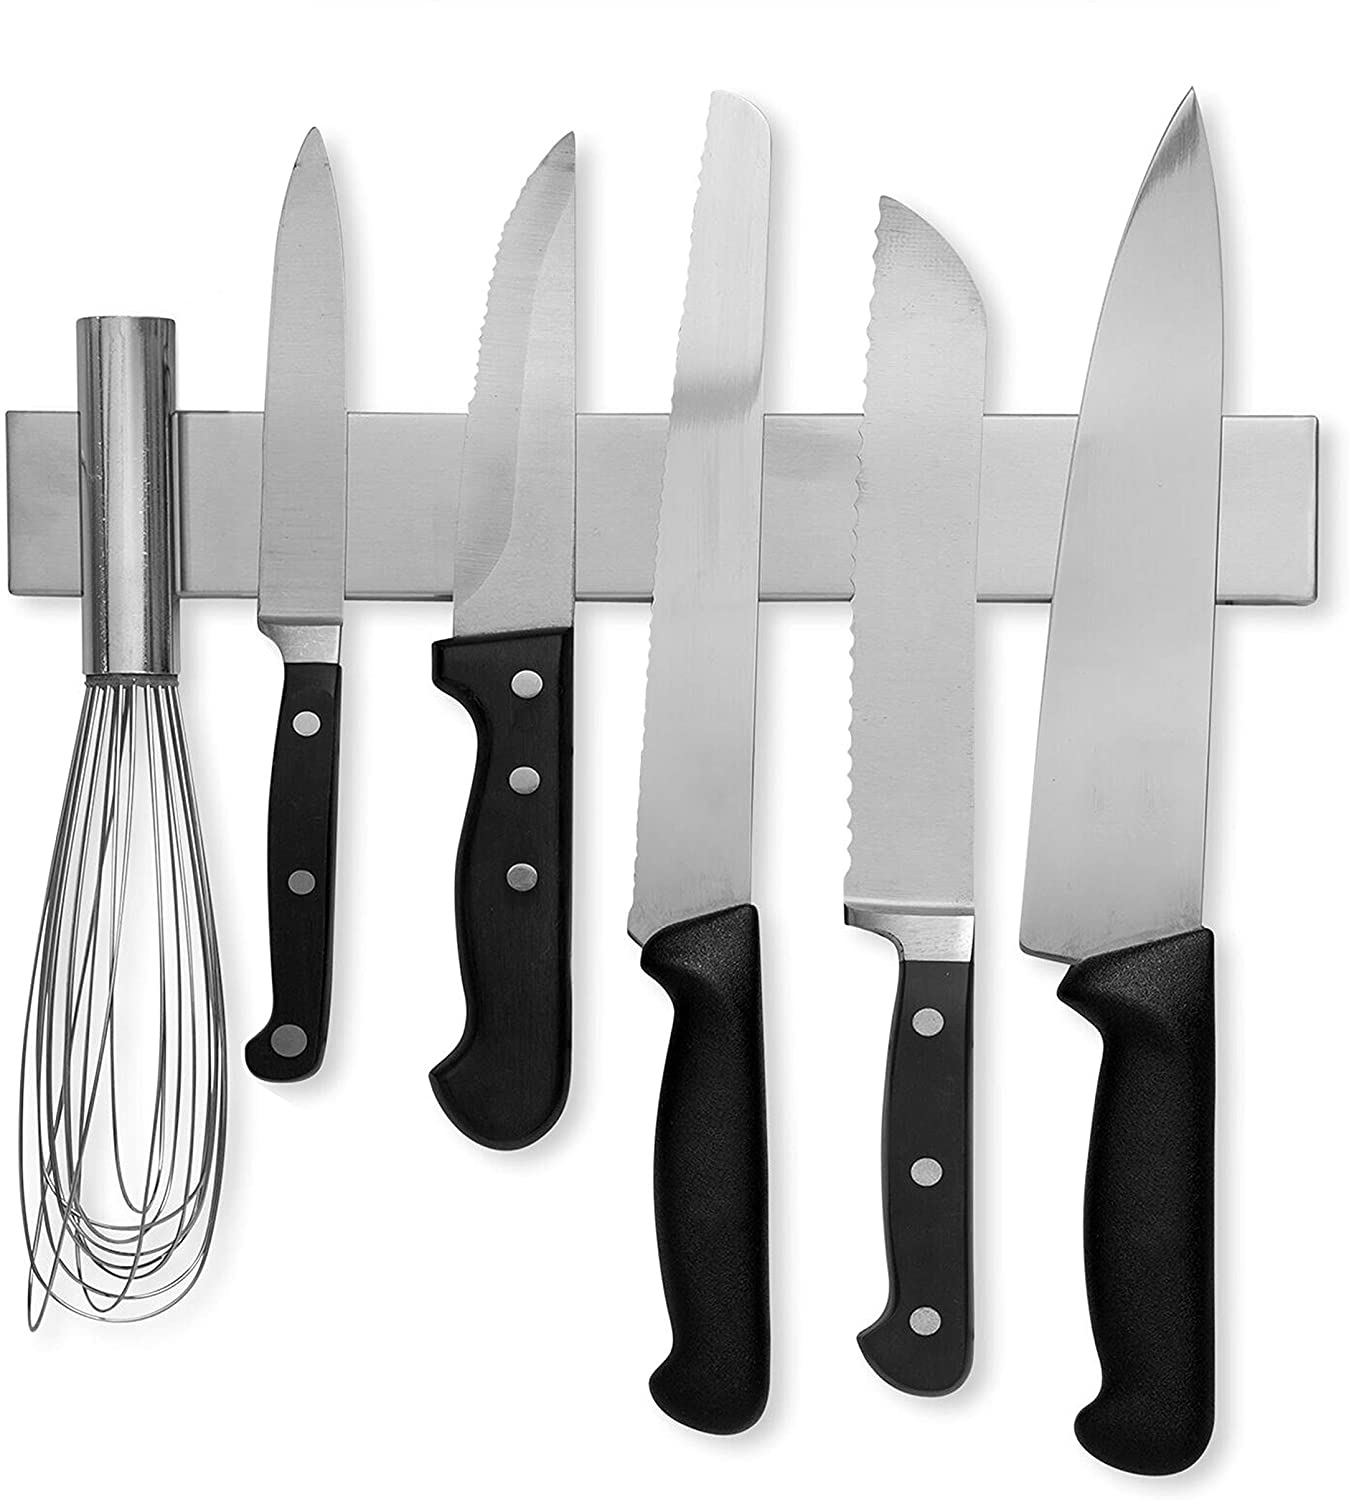 Modern Innovations 10 Inch Stainless Steel Magnetic Knife Bar with Multipurpose Use as Knife Holder, Knife Rack, Knife Strip, Kitchen Utensil Holder, Tool Holder, Art Supply Organizer, Home Organizer